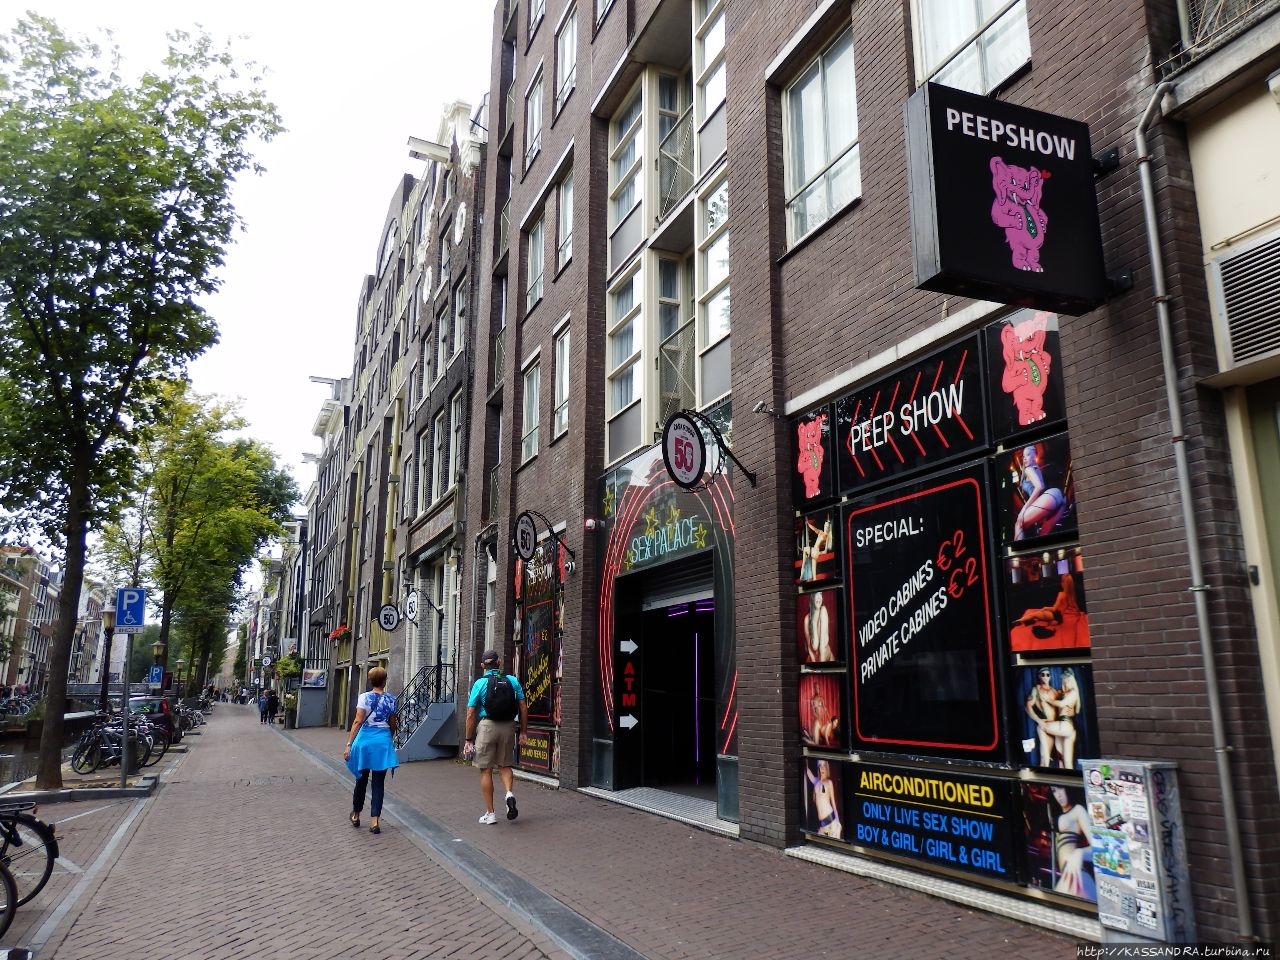 Амстердам. Получая удовольствие, прояви уважение Амстердам, Нидерланды